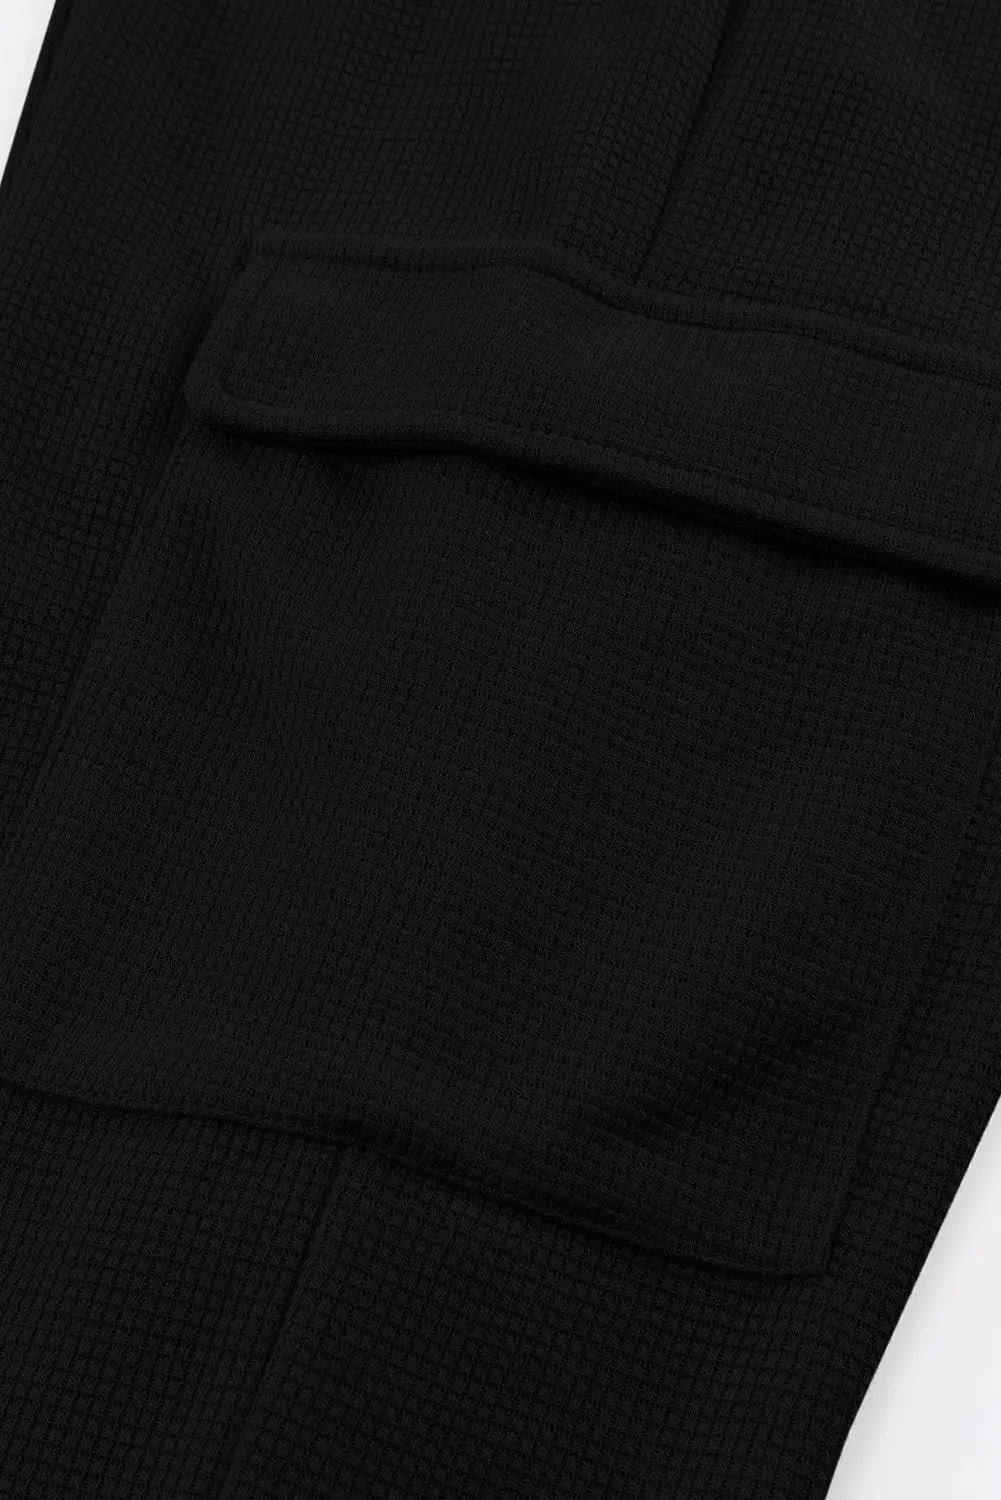 Gray waffle texture cargo pocket jogger pants - joggers